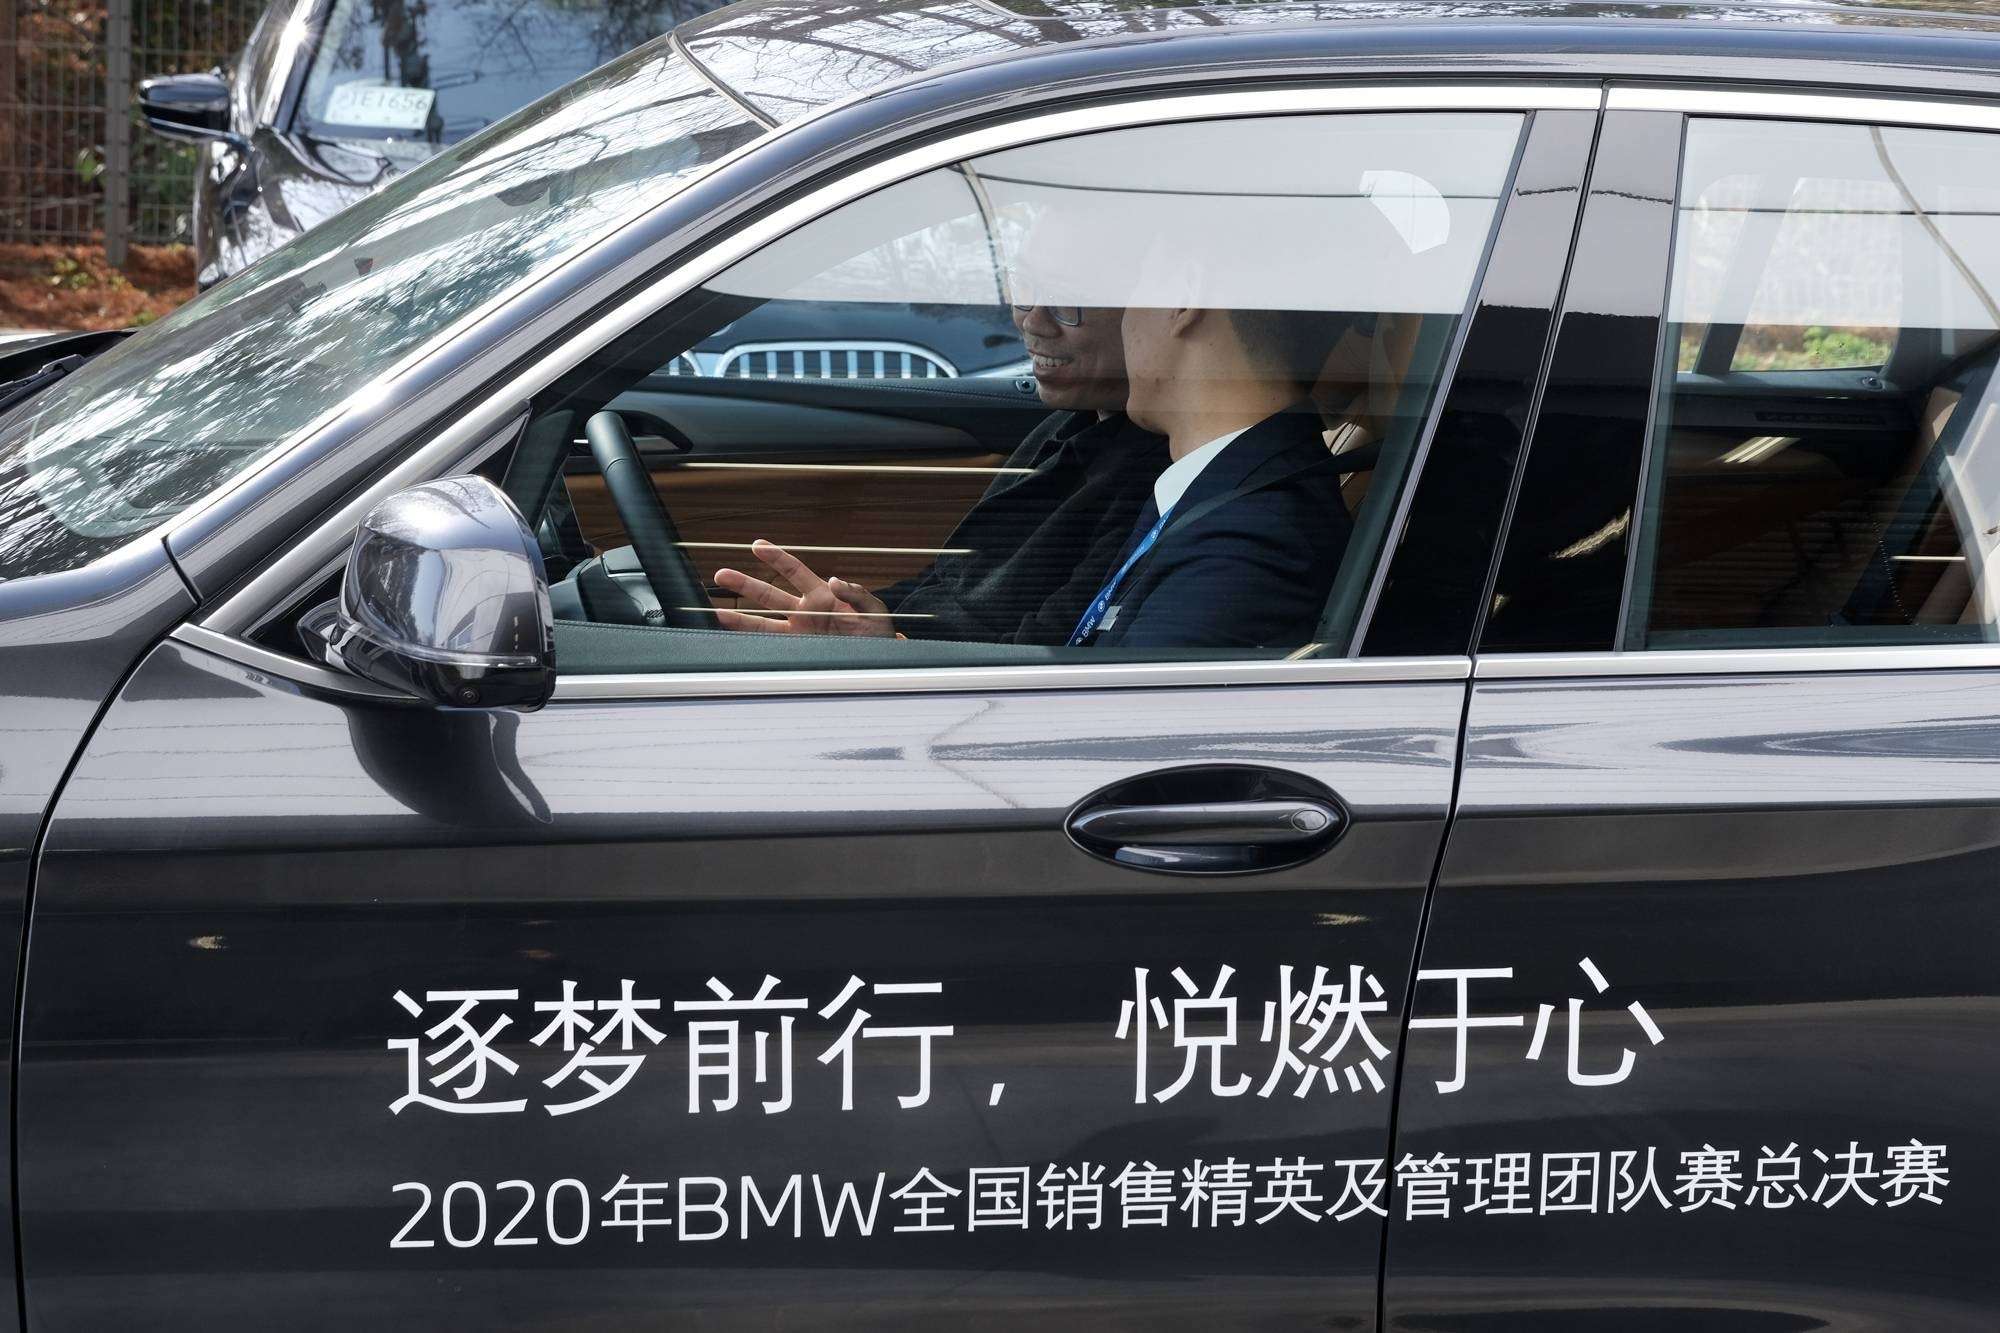 2020年BMW全国销售精英及管理团队赛圆满落幕